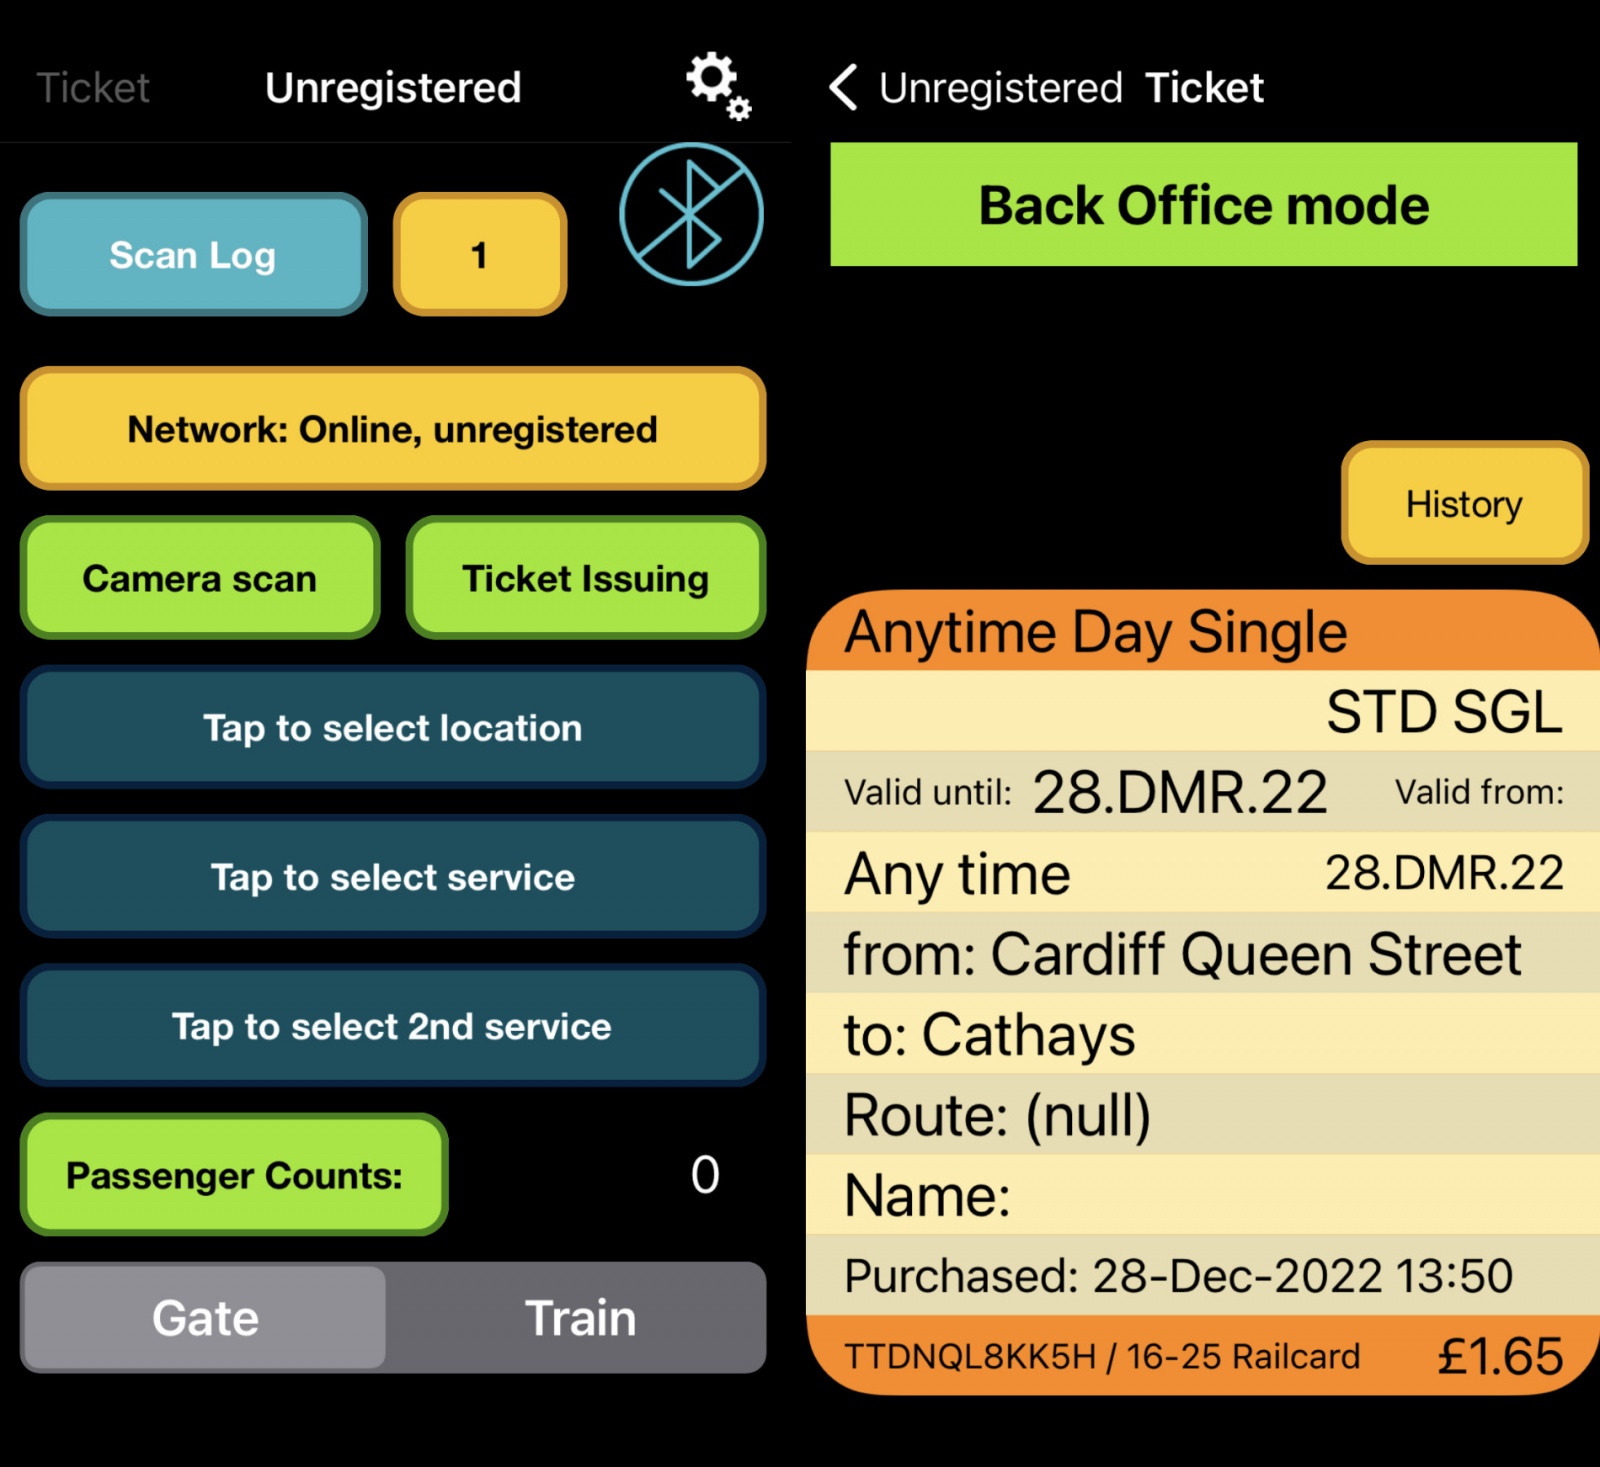 Реверс-инжиниринг британских билетов на поезд - 11